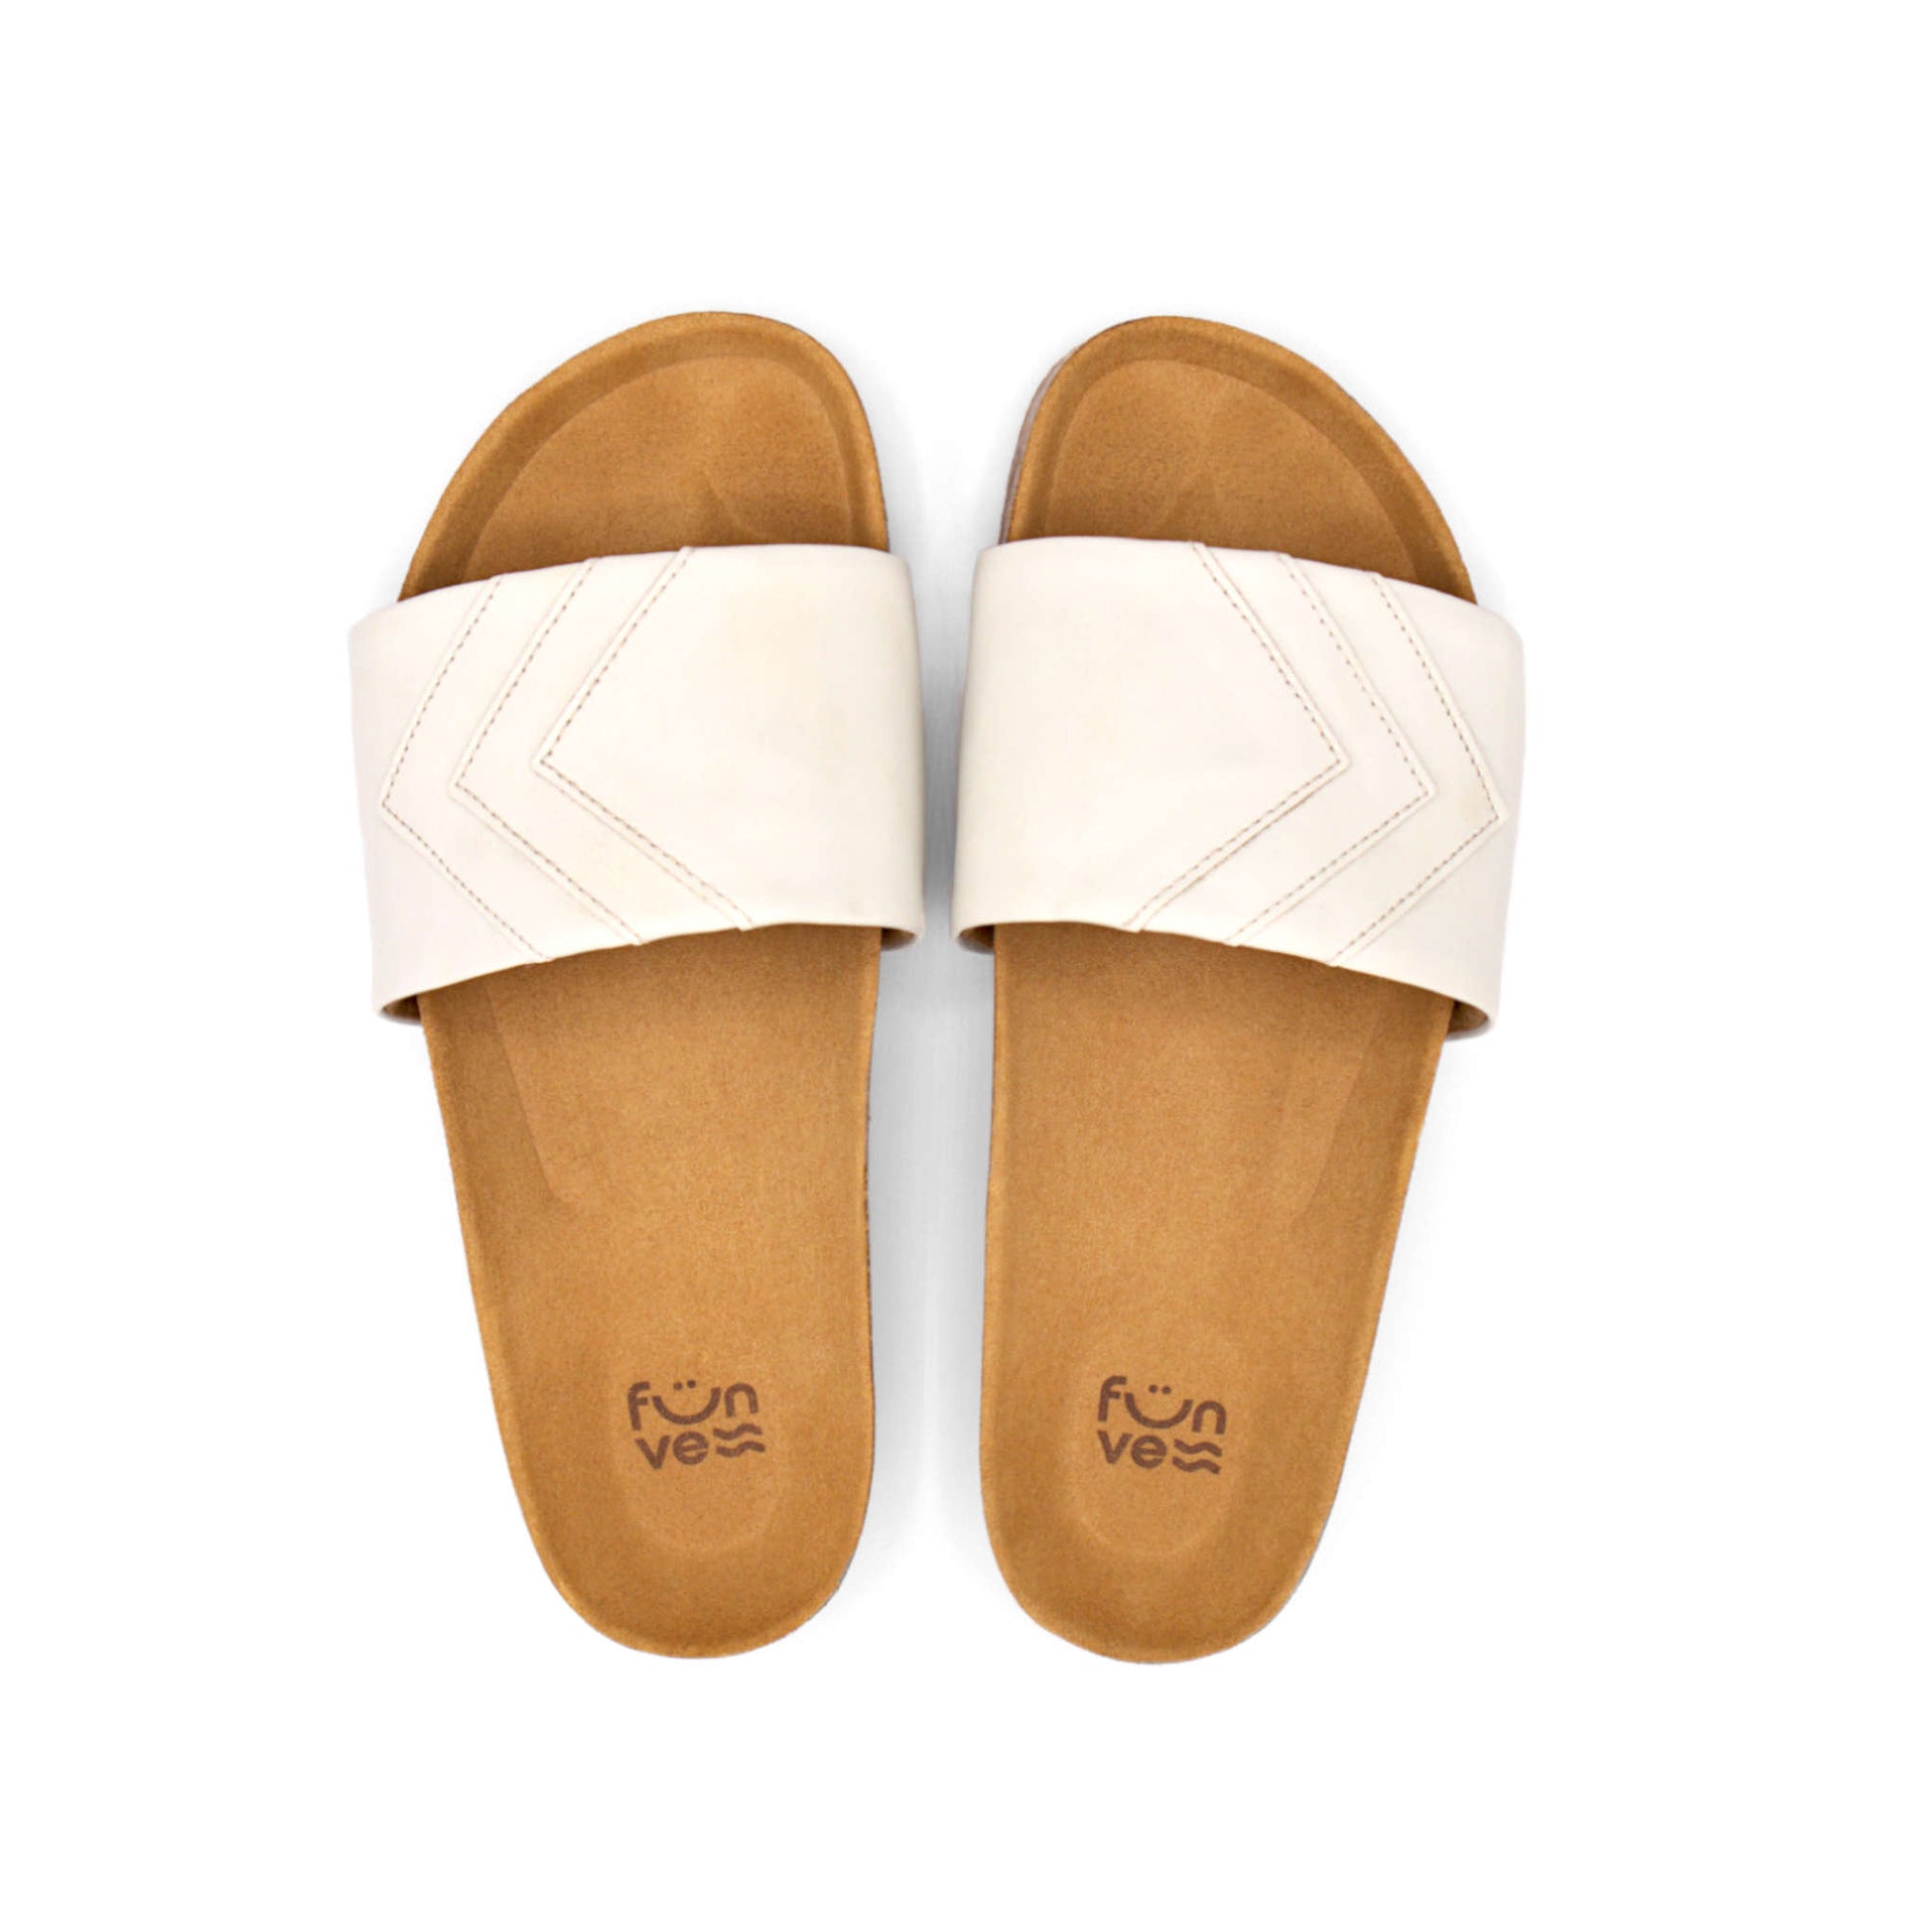 Weiße Sandalen; vegan mit Fußbett; monochrom einfarbig; Marke Fünve; Modell Yang; Vogelperspektive